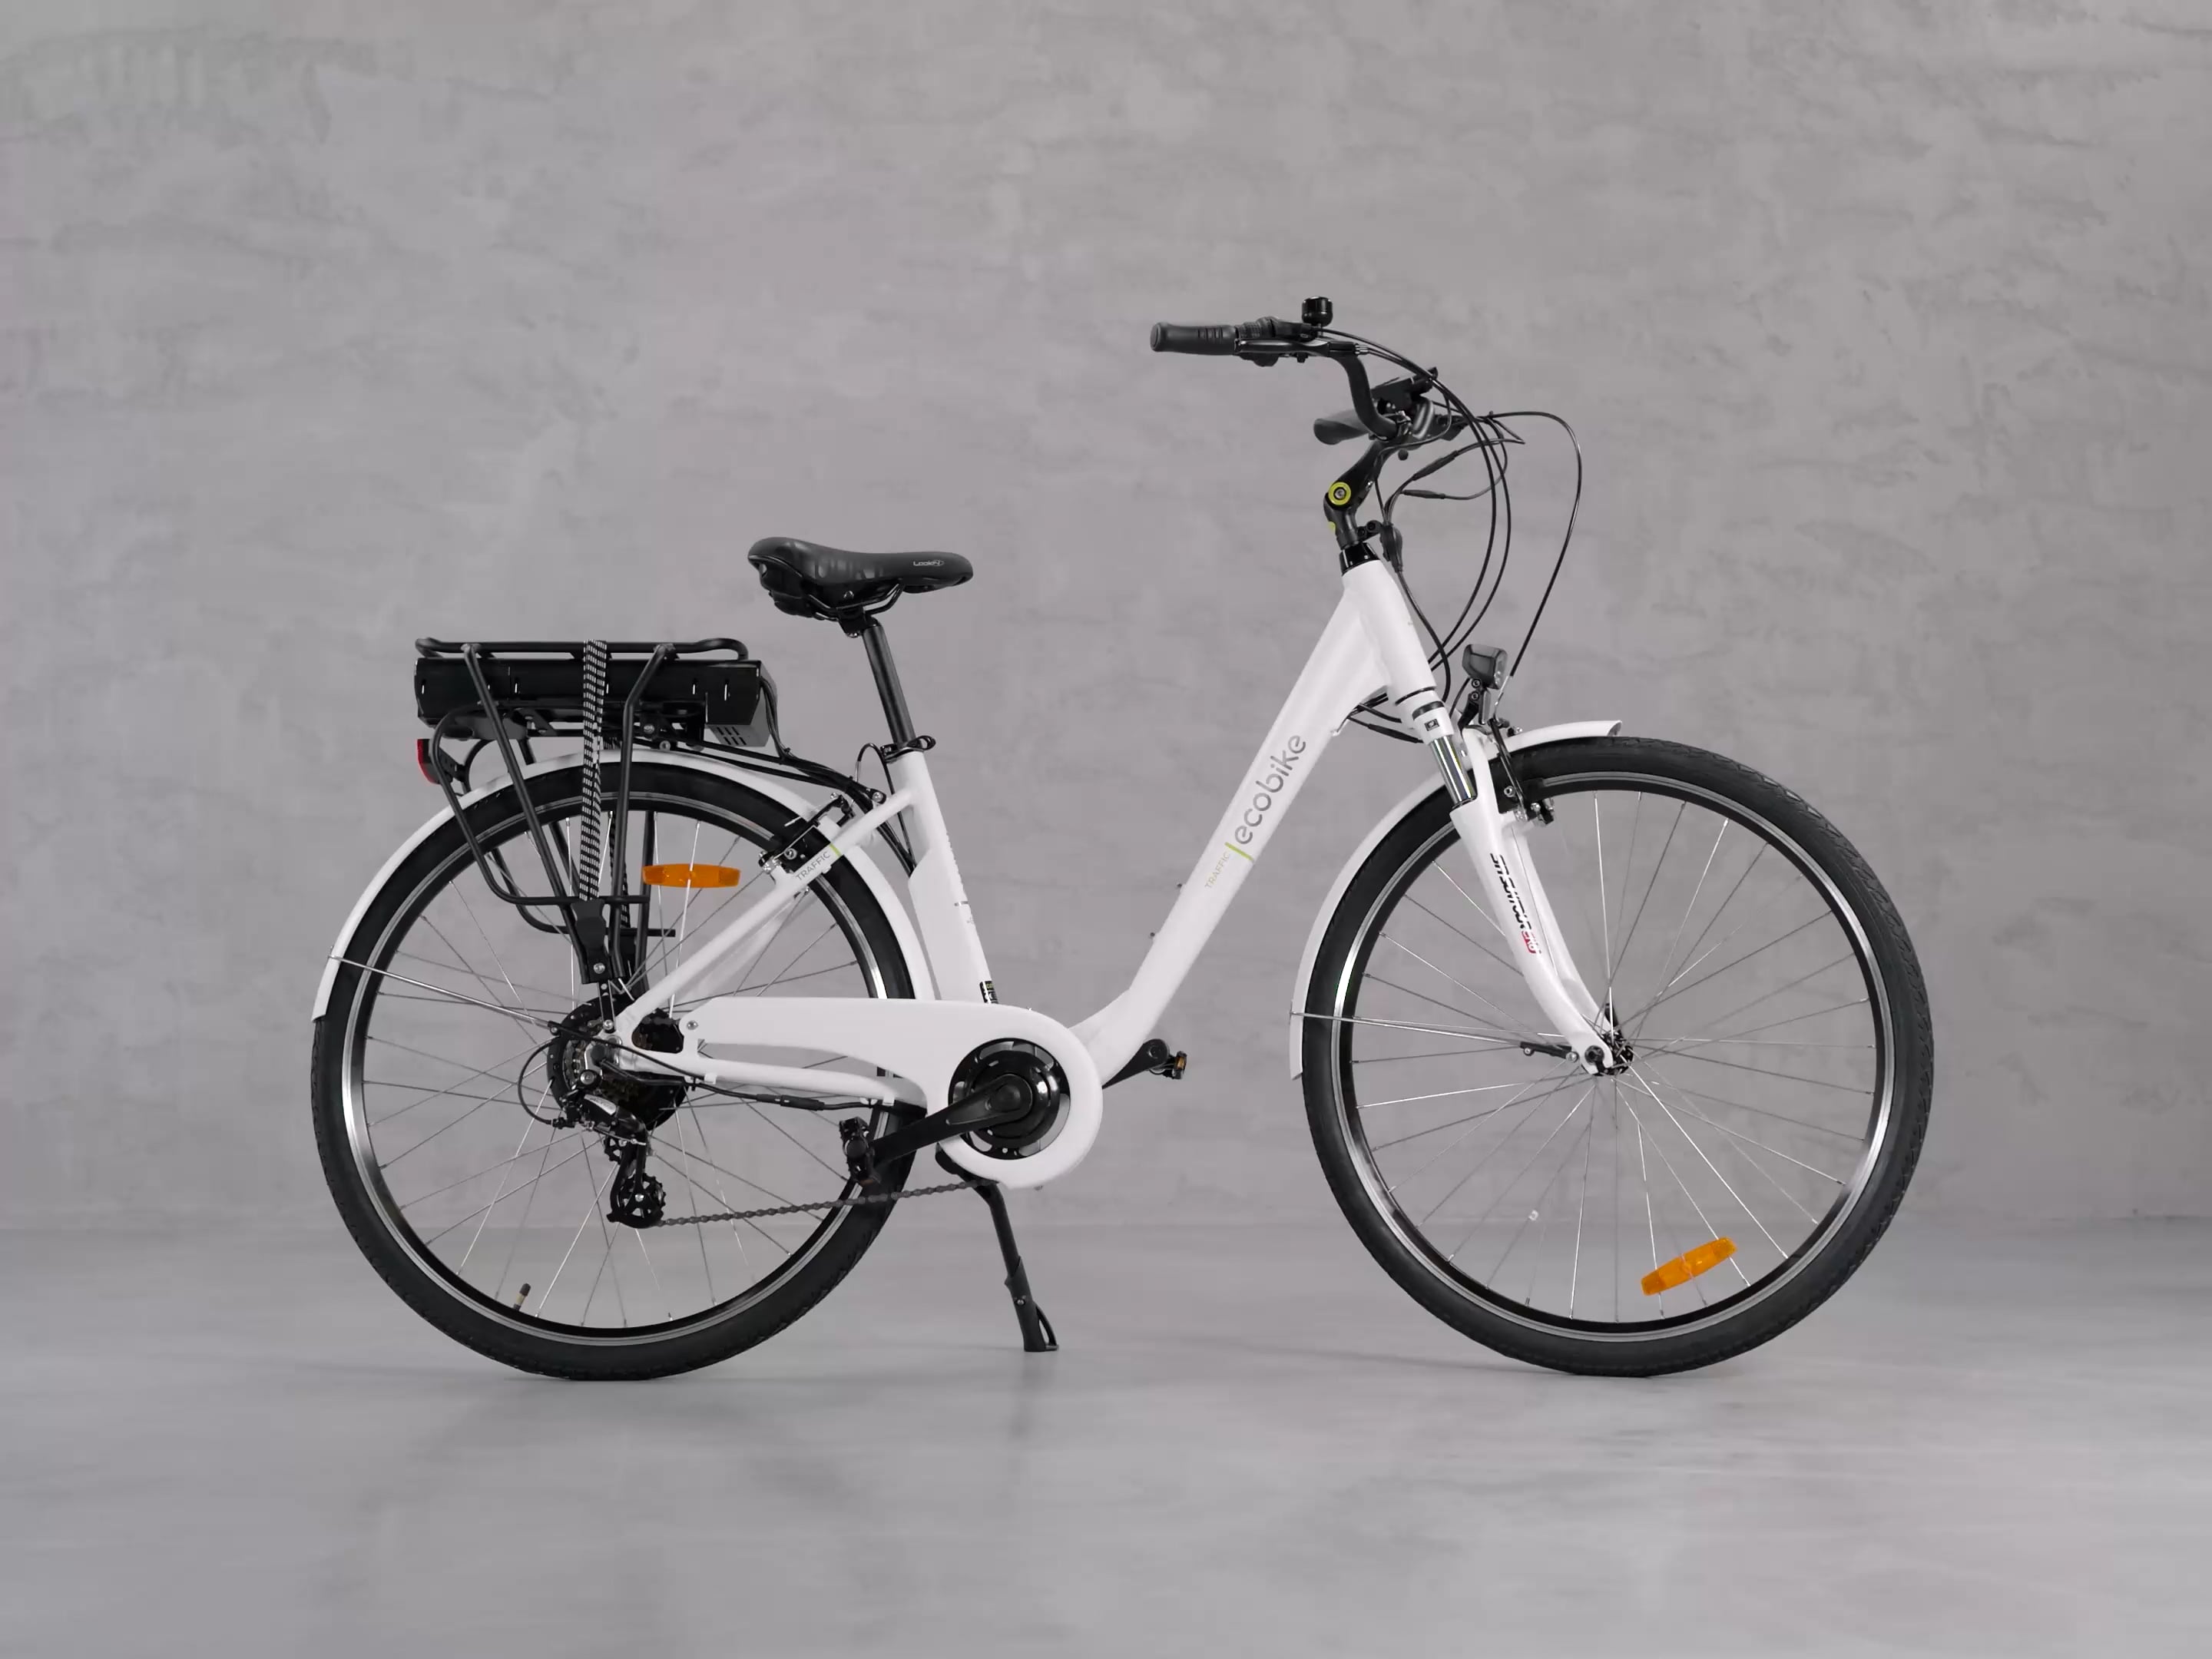 Bicicleta electrică Ecobike Traffic el. 13Ah Alb 1010105